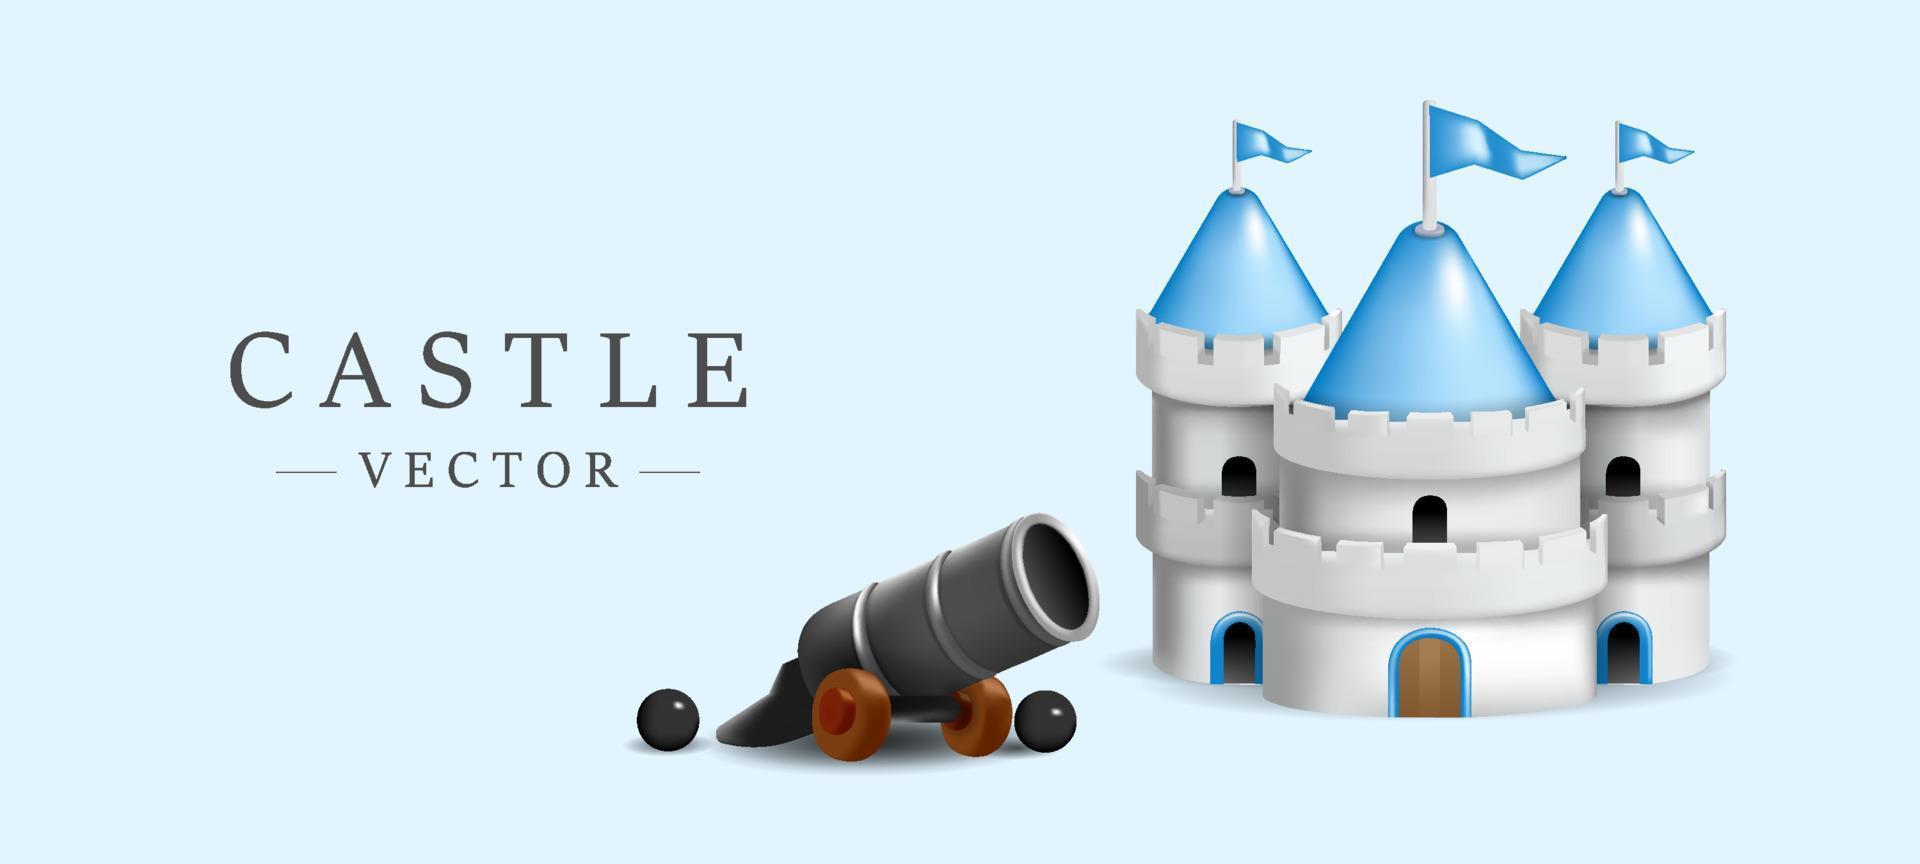 modelo 3d de castelo bonito com ilustração vetorial de mini canhão em fundo azul céu vetor